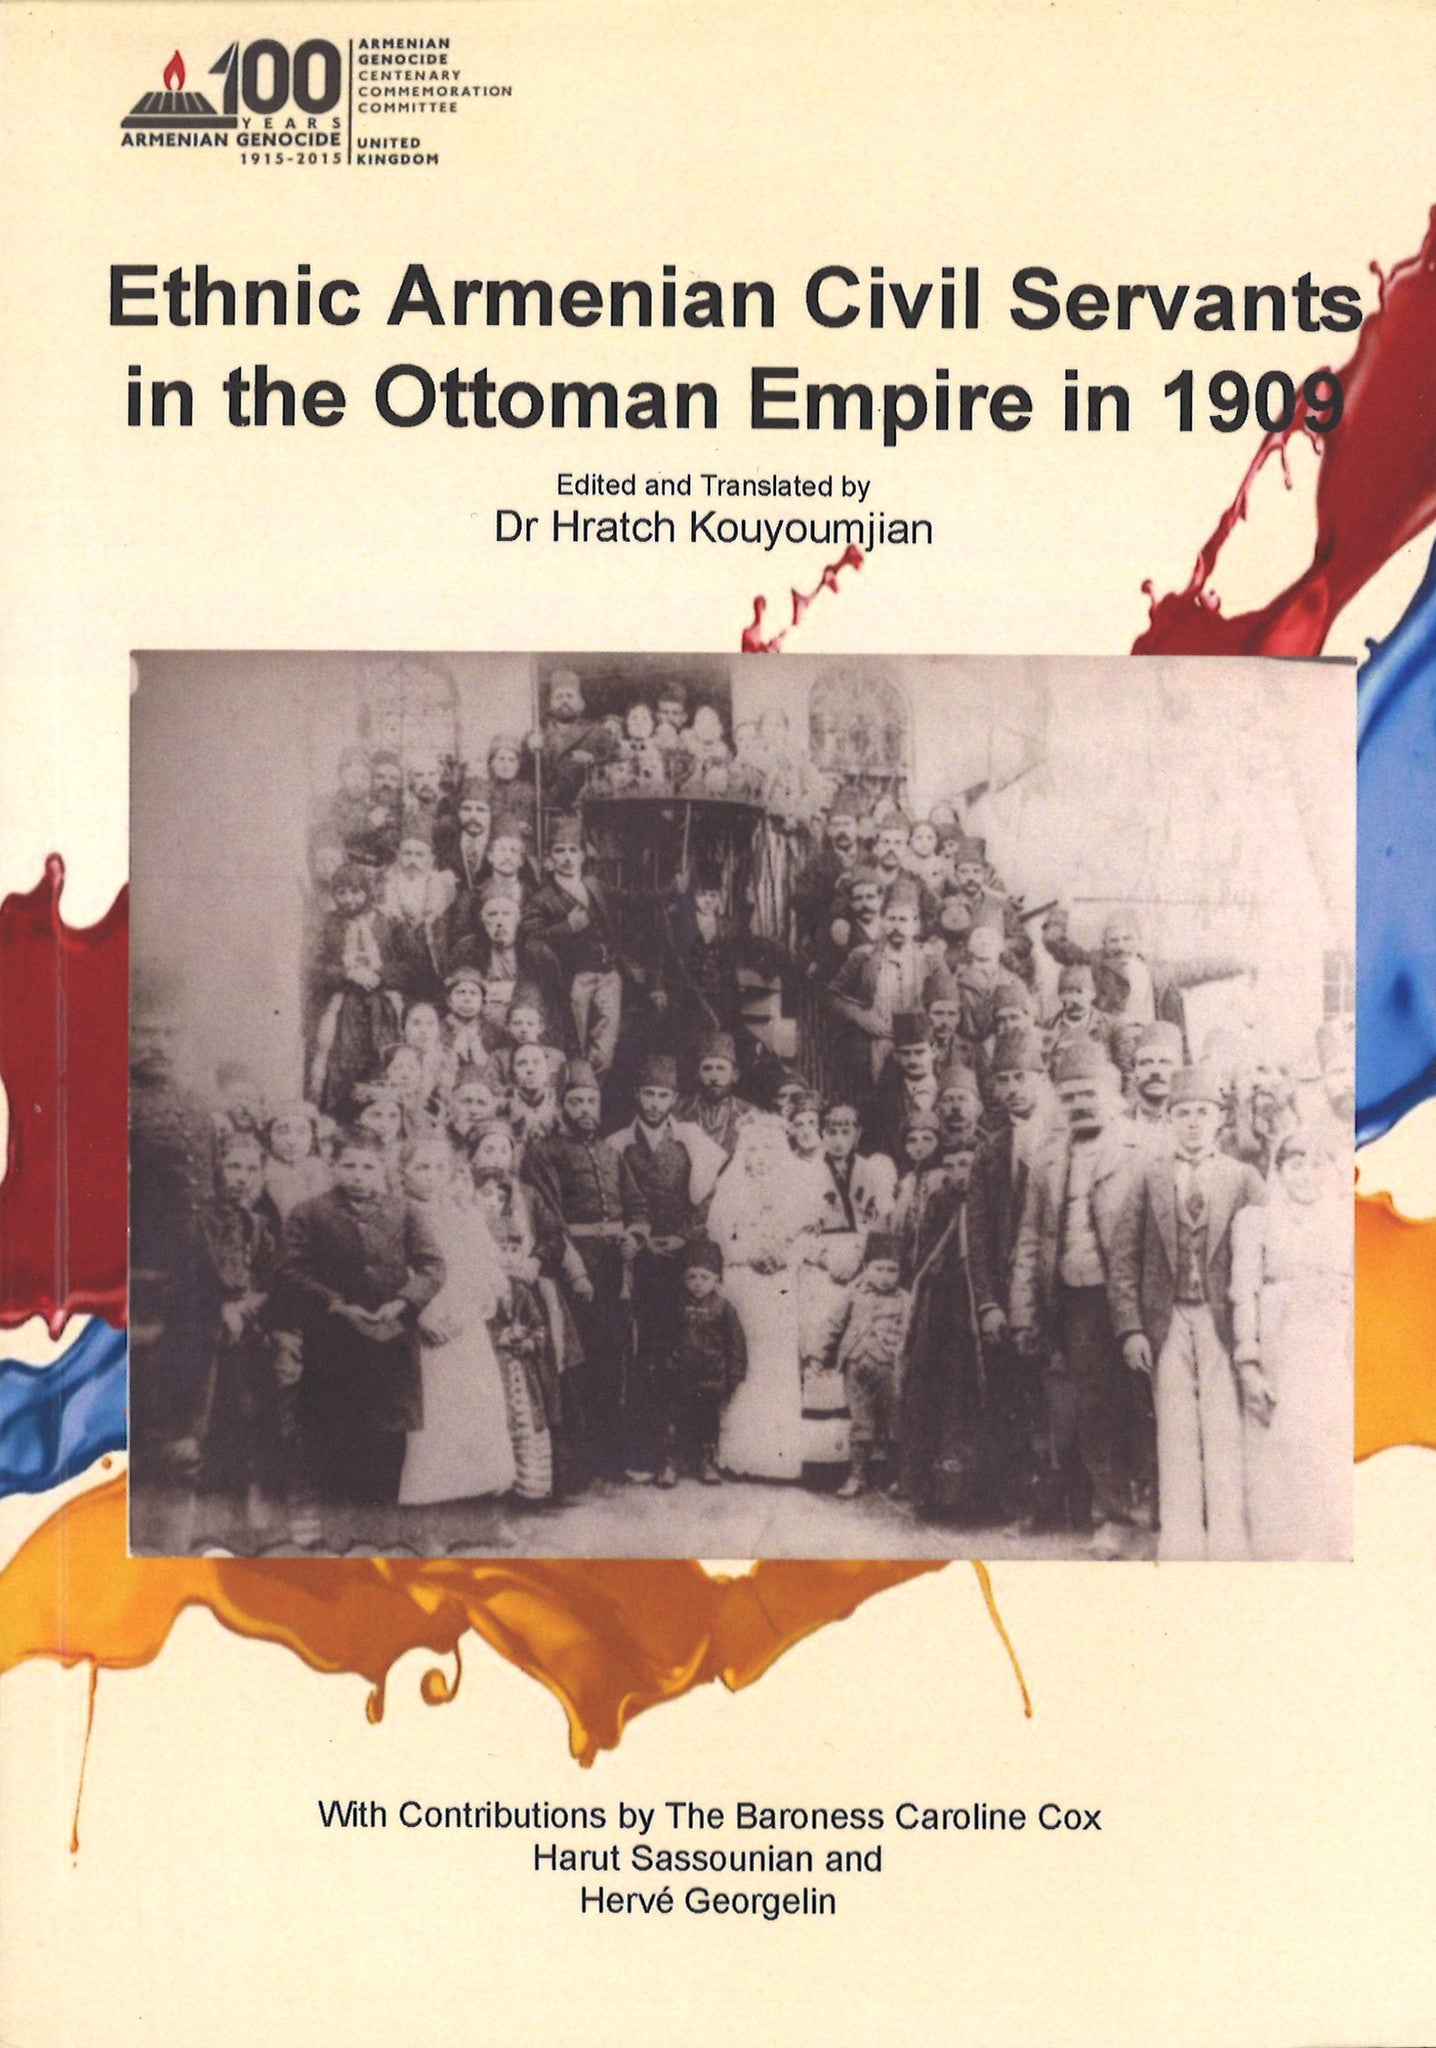 ETHNIC ARMENIAN CIVIL SERVANTS IN THE OTTOMAN EMPIRE IN 1909